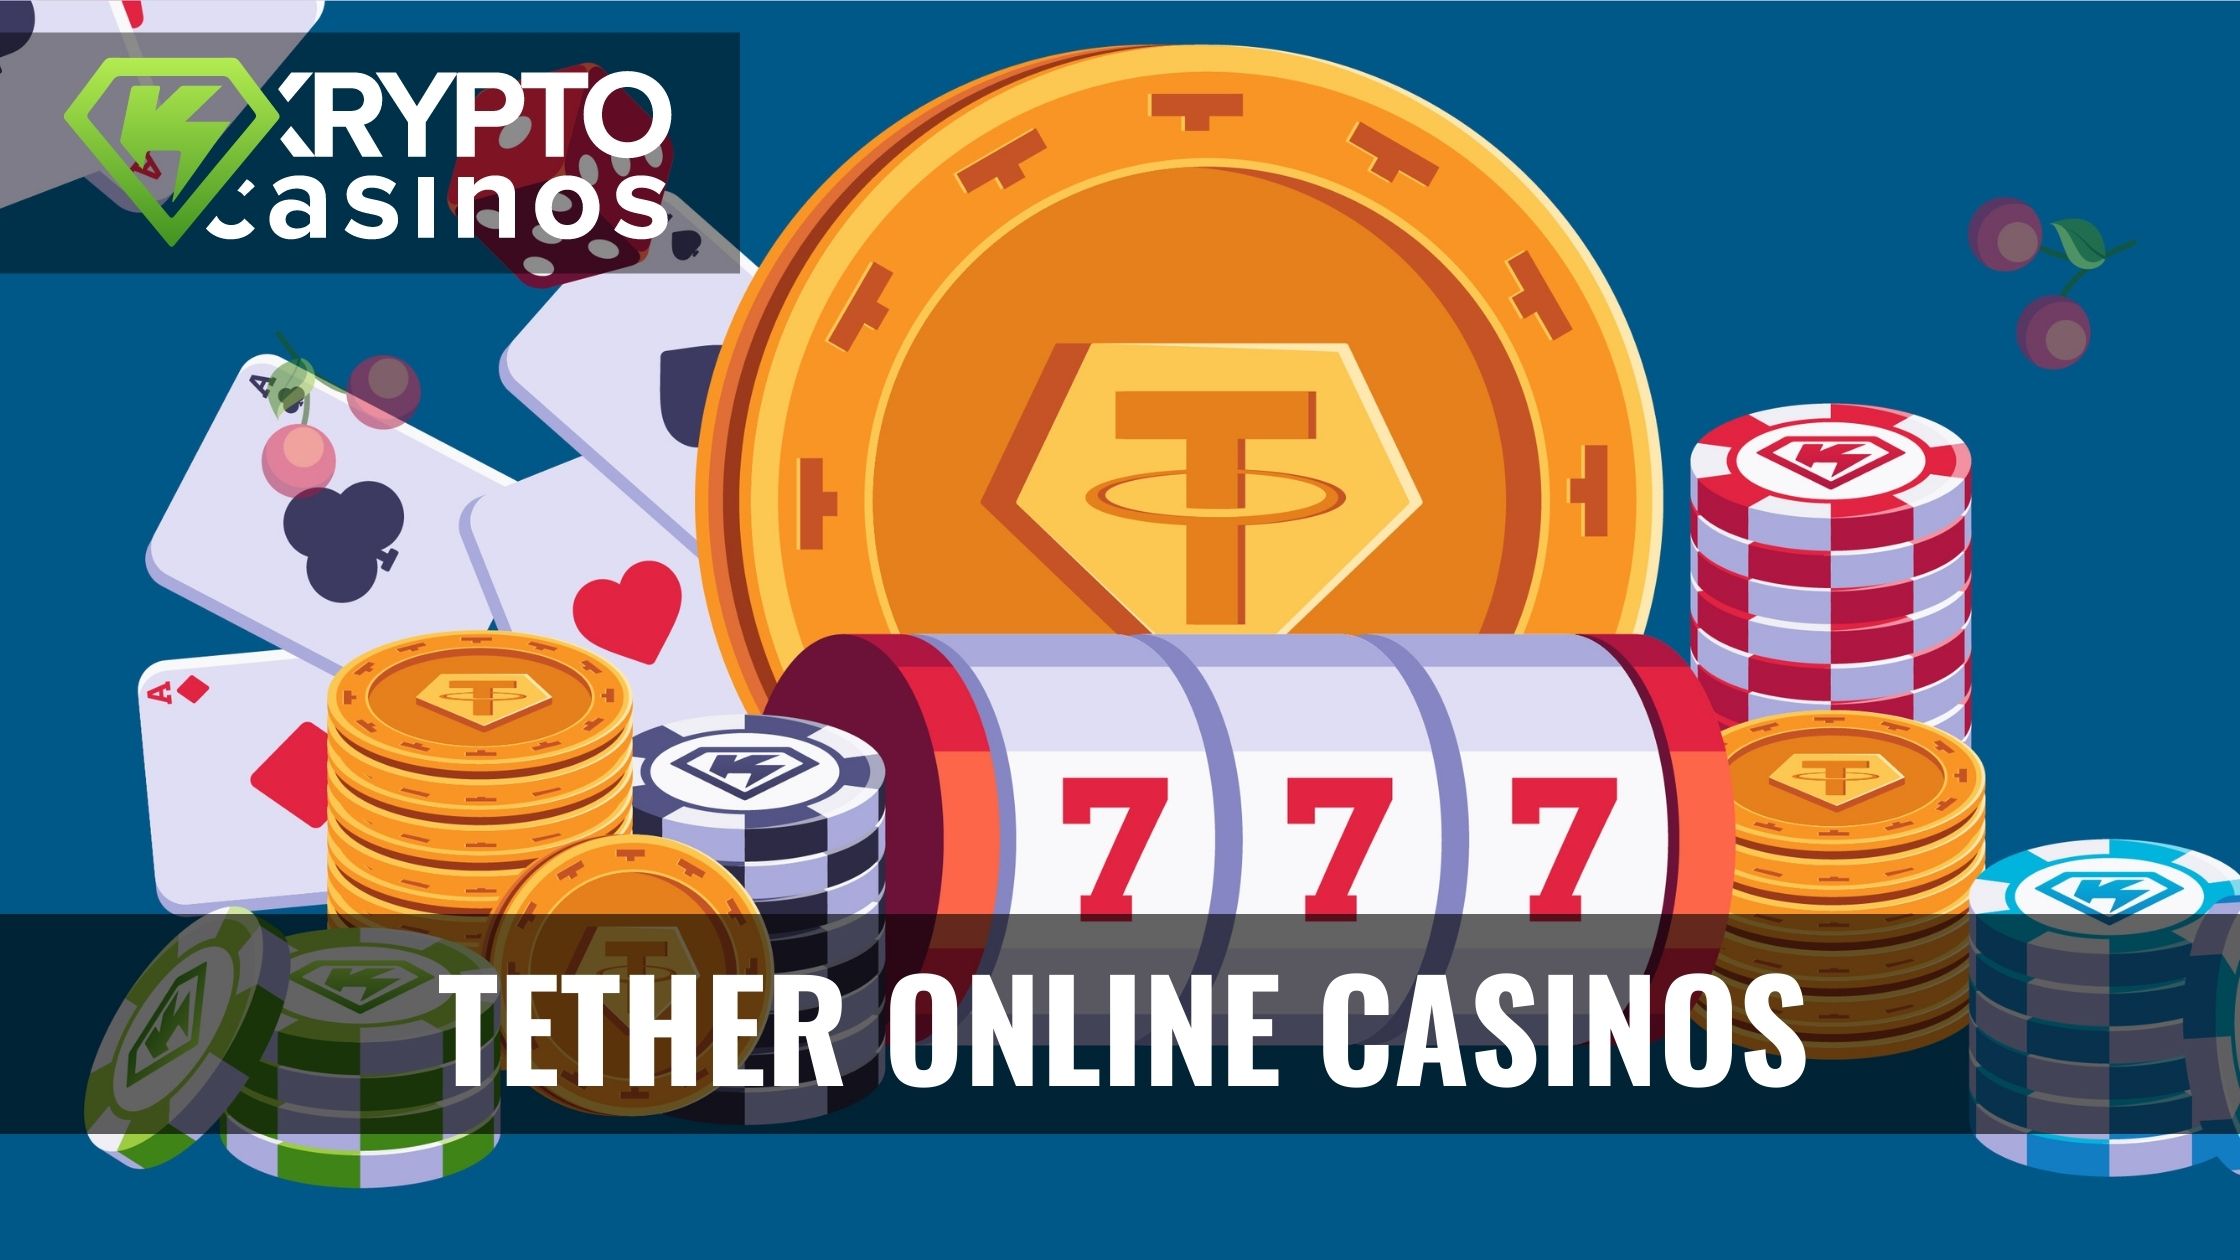 Enostavni koraki do online casino bonus  vaših sanj